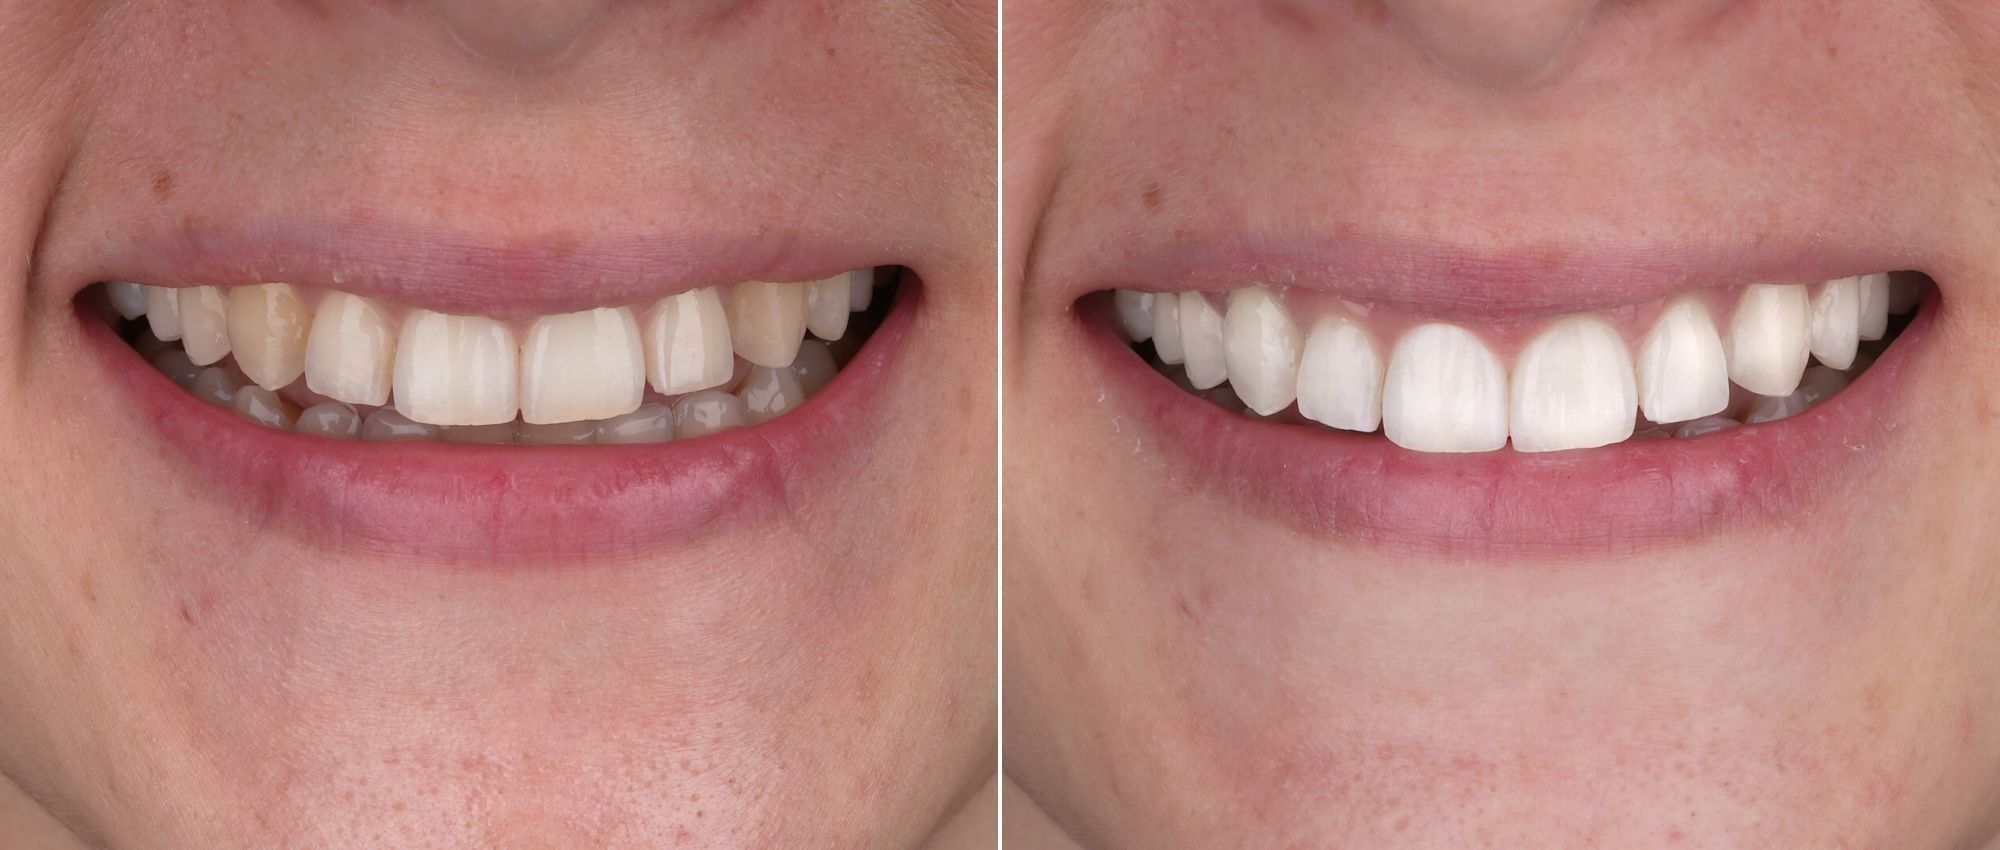 antes y después de blanqueamiento dental